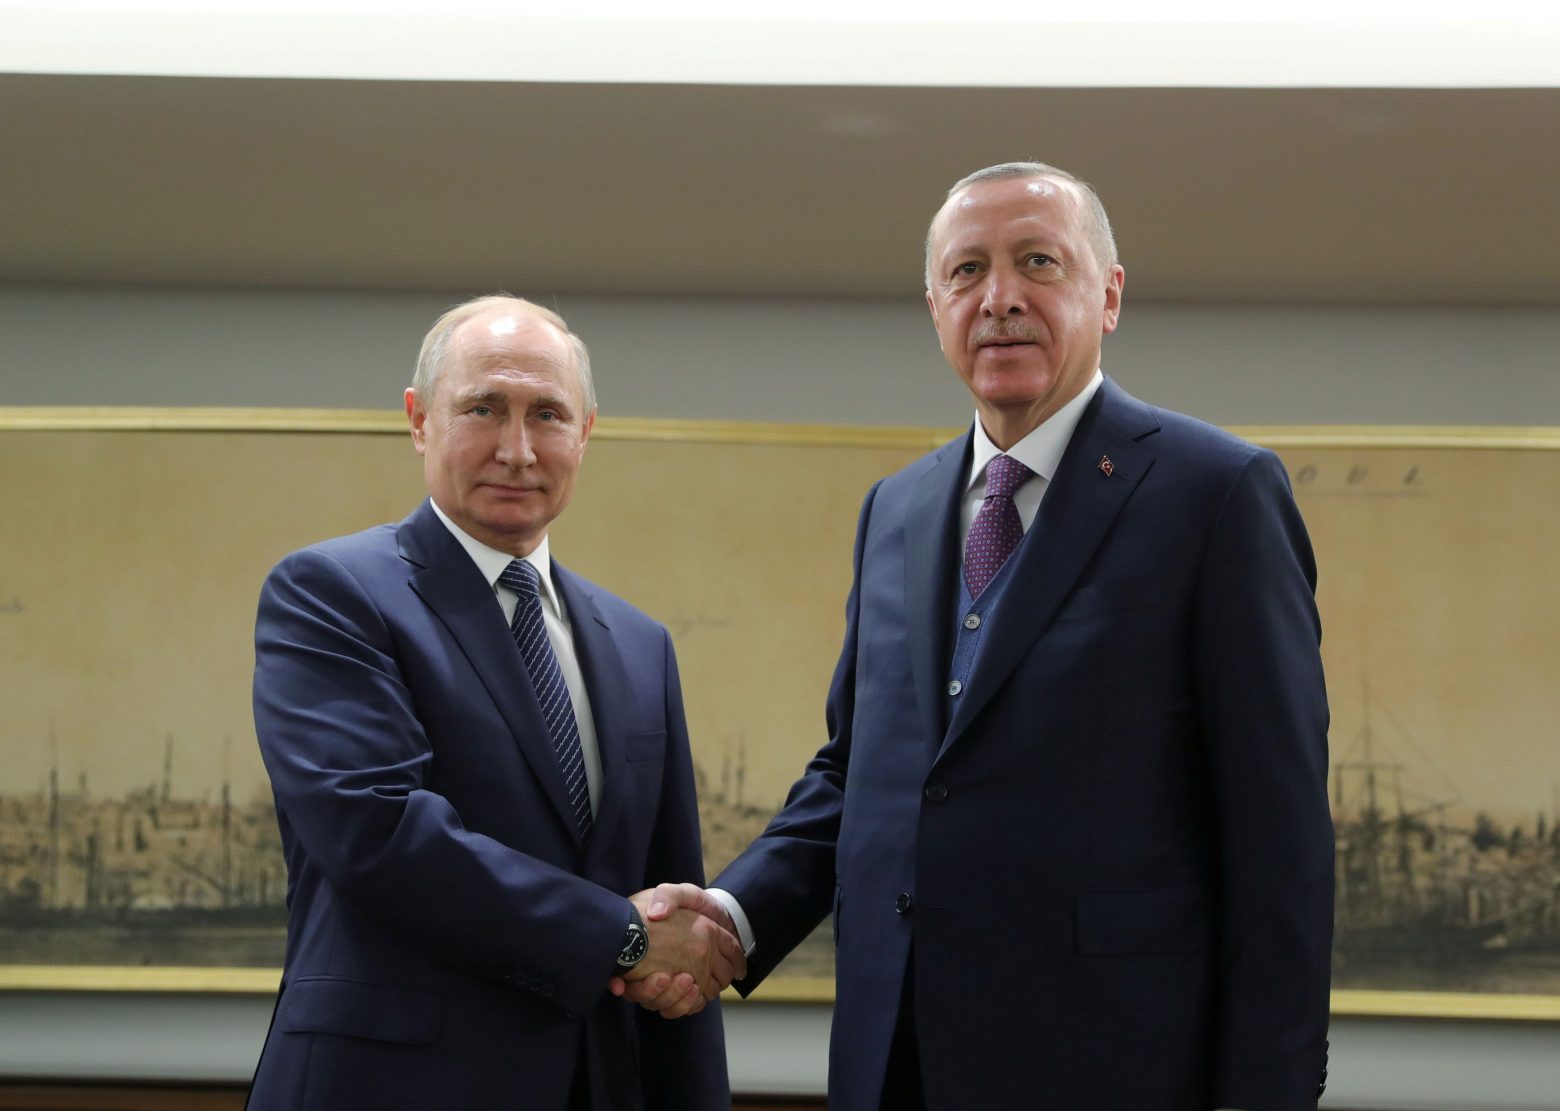 Ο Πούτιν δηλώνει στον Ερντογάν ότι ελπίζει σε μια συμφωνία για την ενίσχυση της οικονομικής συνεργασίας των δύο χωρών – Για μια νέα «σελίδα» στις διμερείς σχέσεις κάνει λόγο ο Τούρκος πρόεδρος